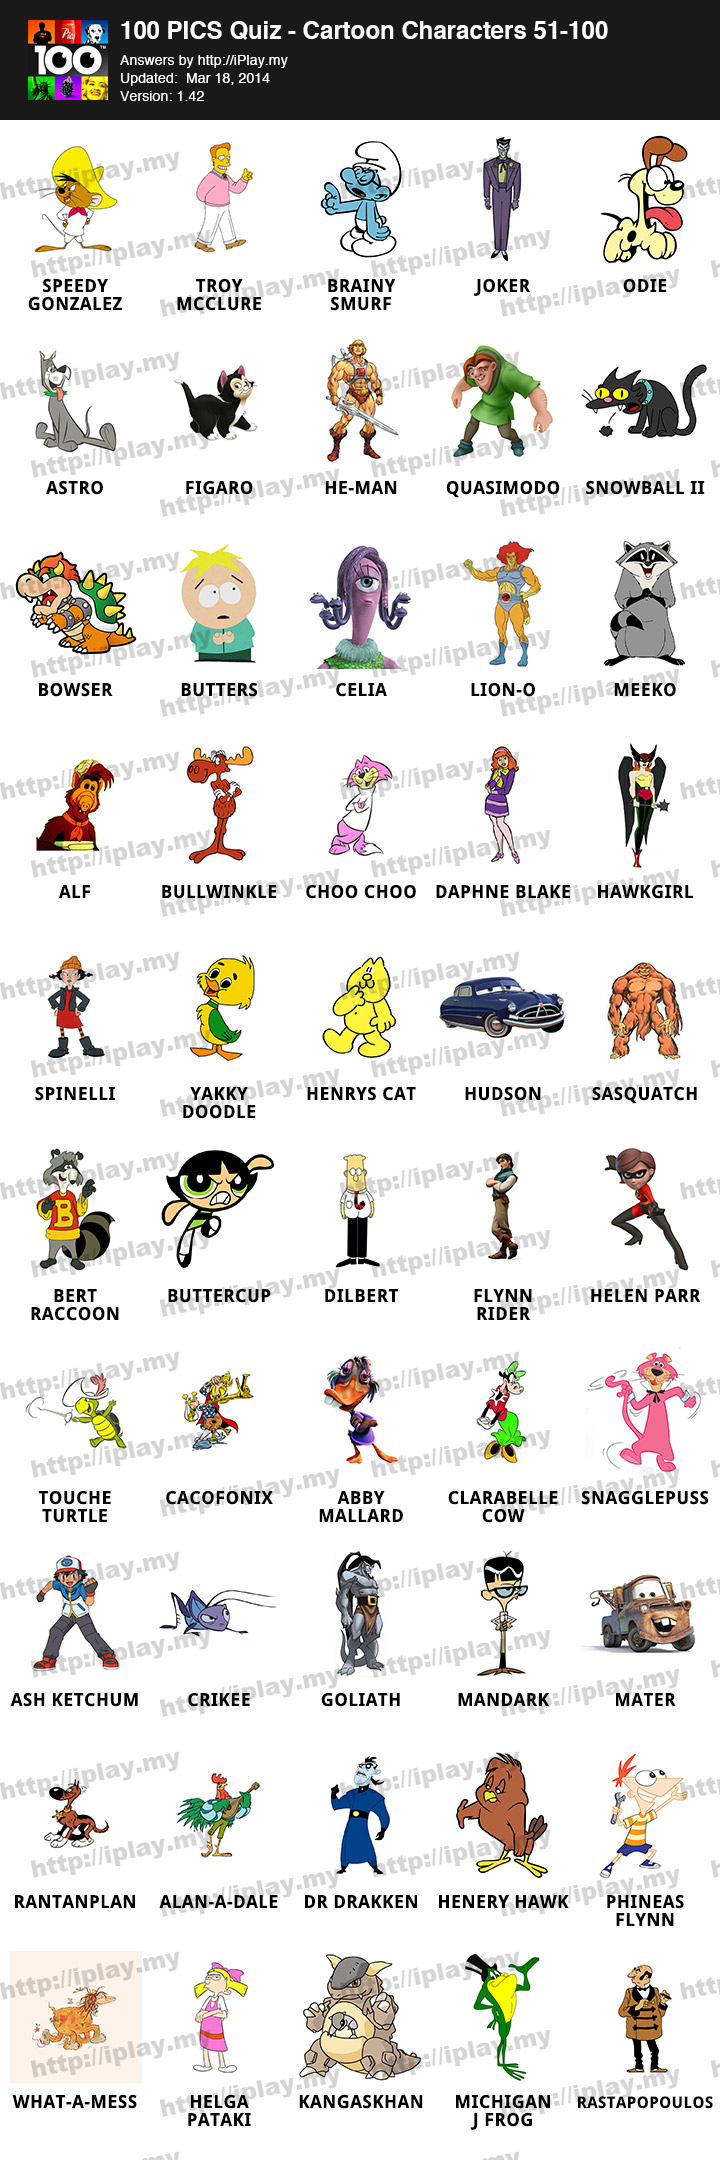 100 Pics Cartoon Characters Answers IPlay my